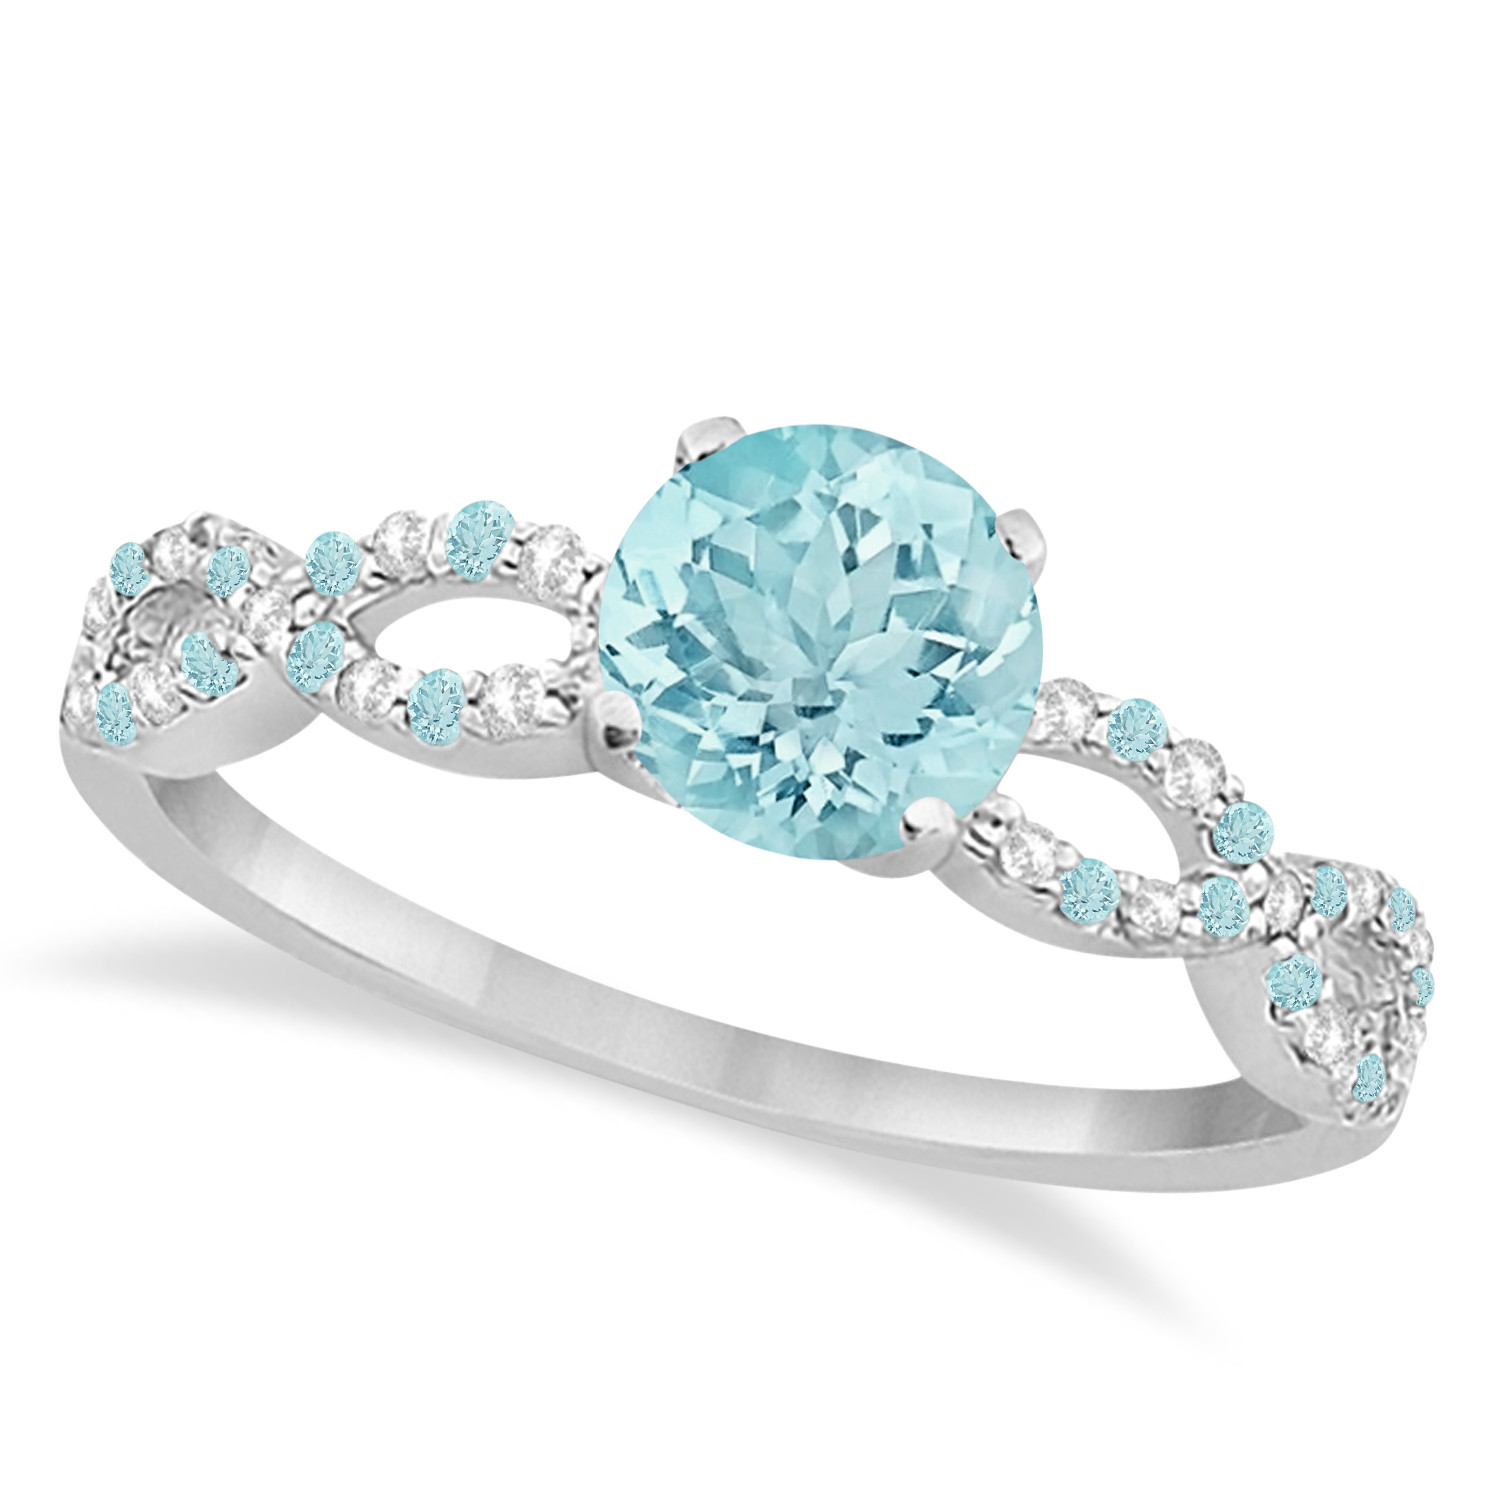 Aquamarine Wedding Bands
 Infinity Diamond & Aquamarine Engagement Ring 14K White